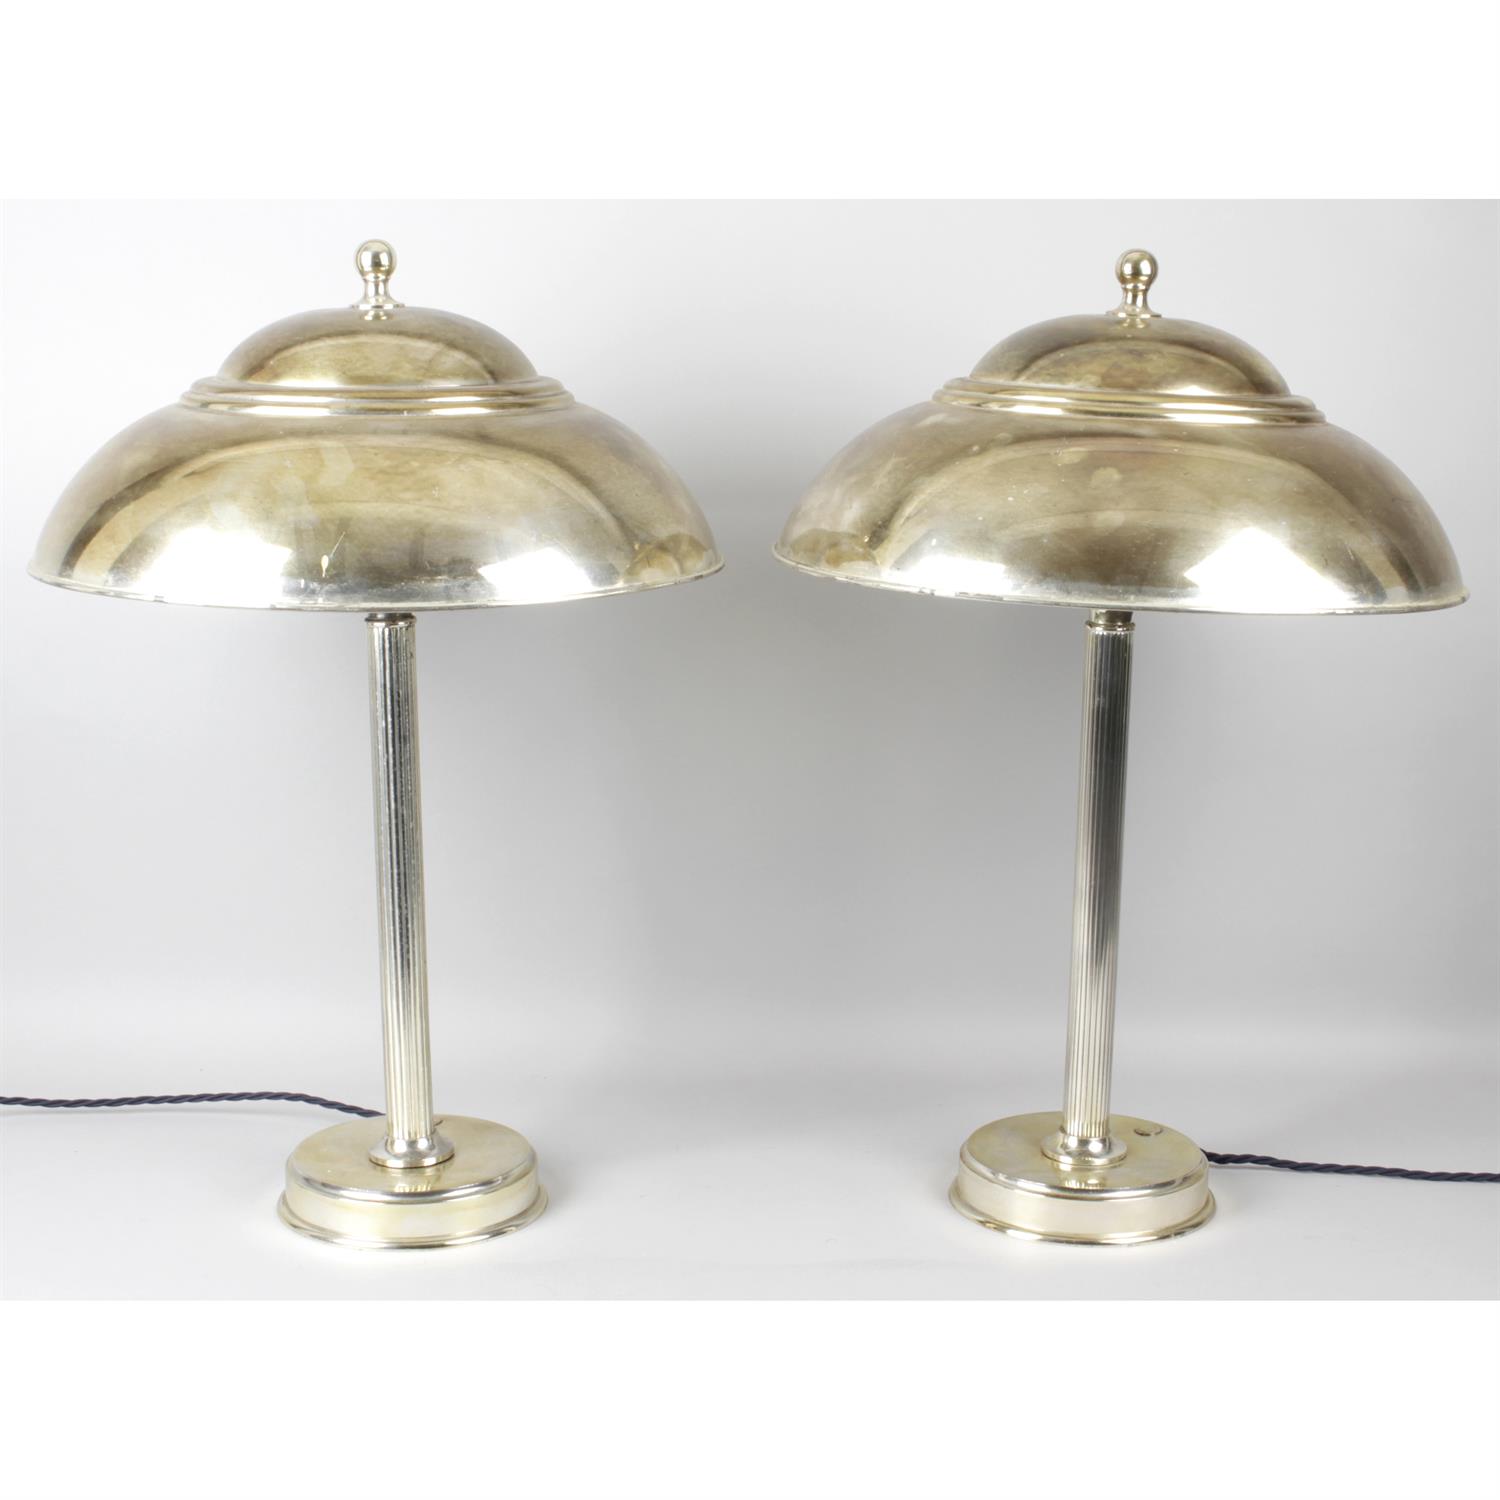 Silvered mushroom table lamps